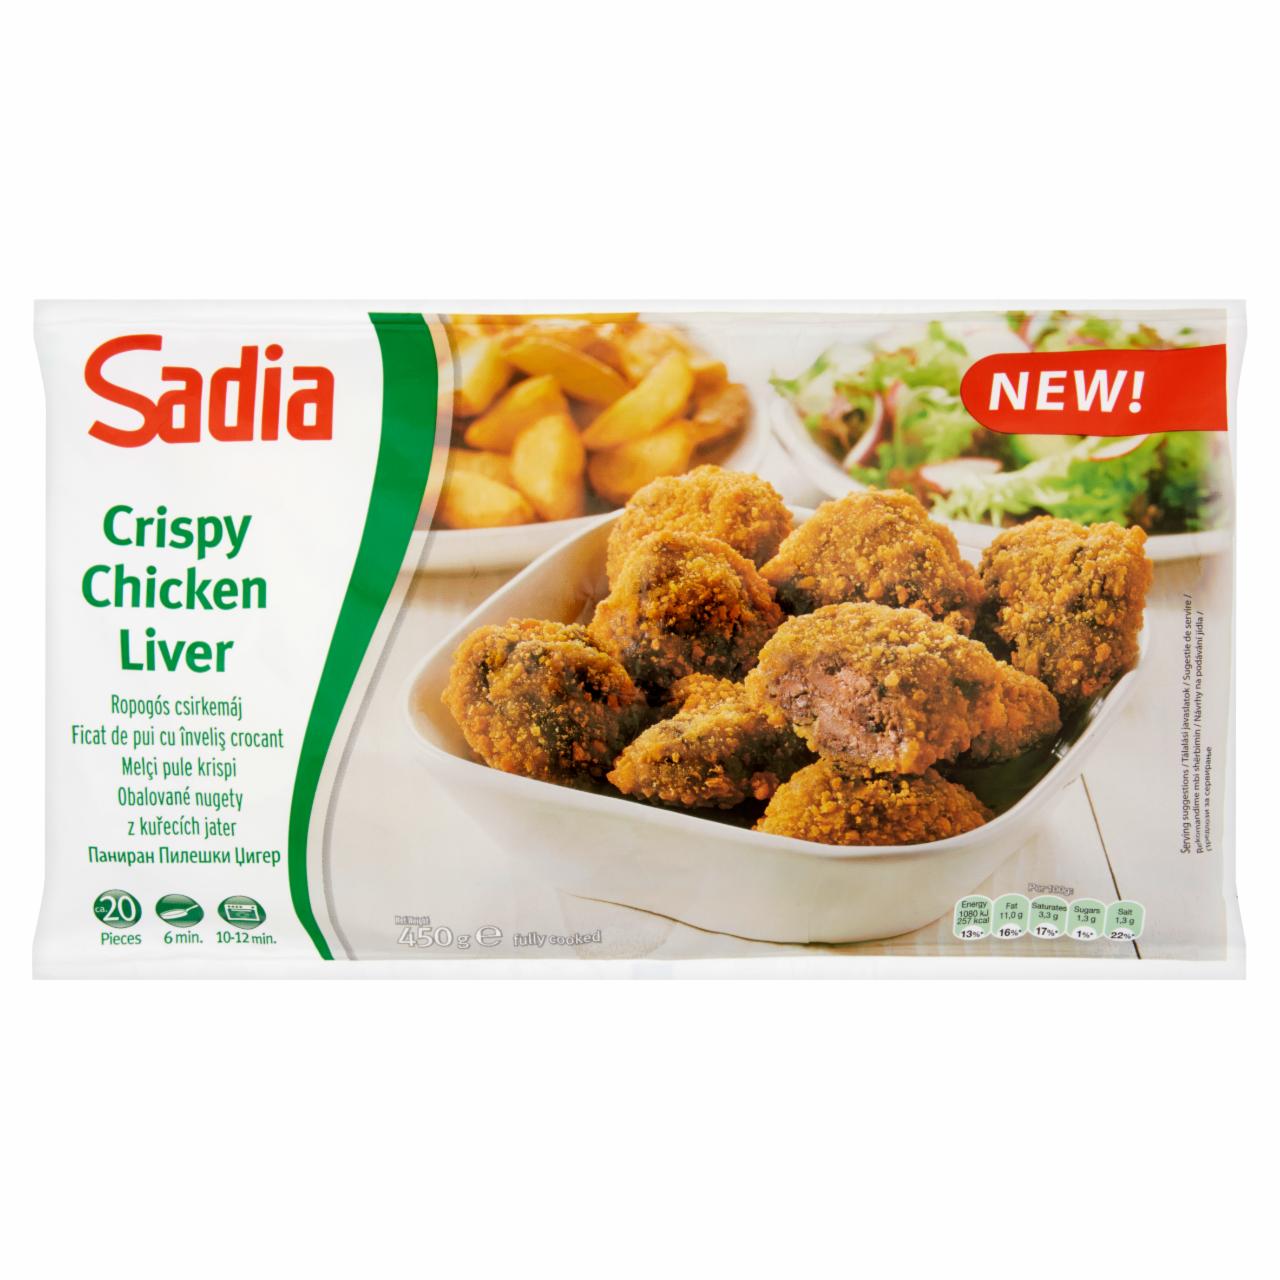 Képek - Sadia gyorsfagyasztott, elősütött, panírozott ropogós csirkemáj 450 g